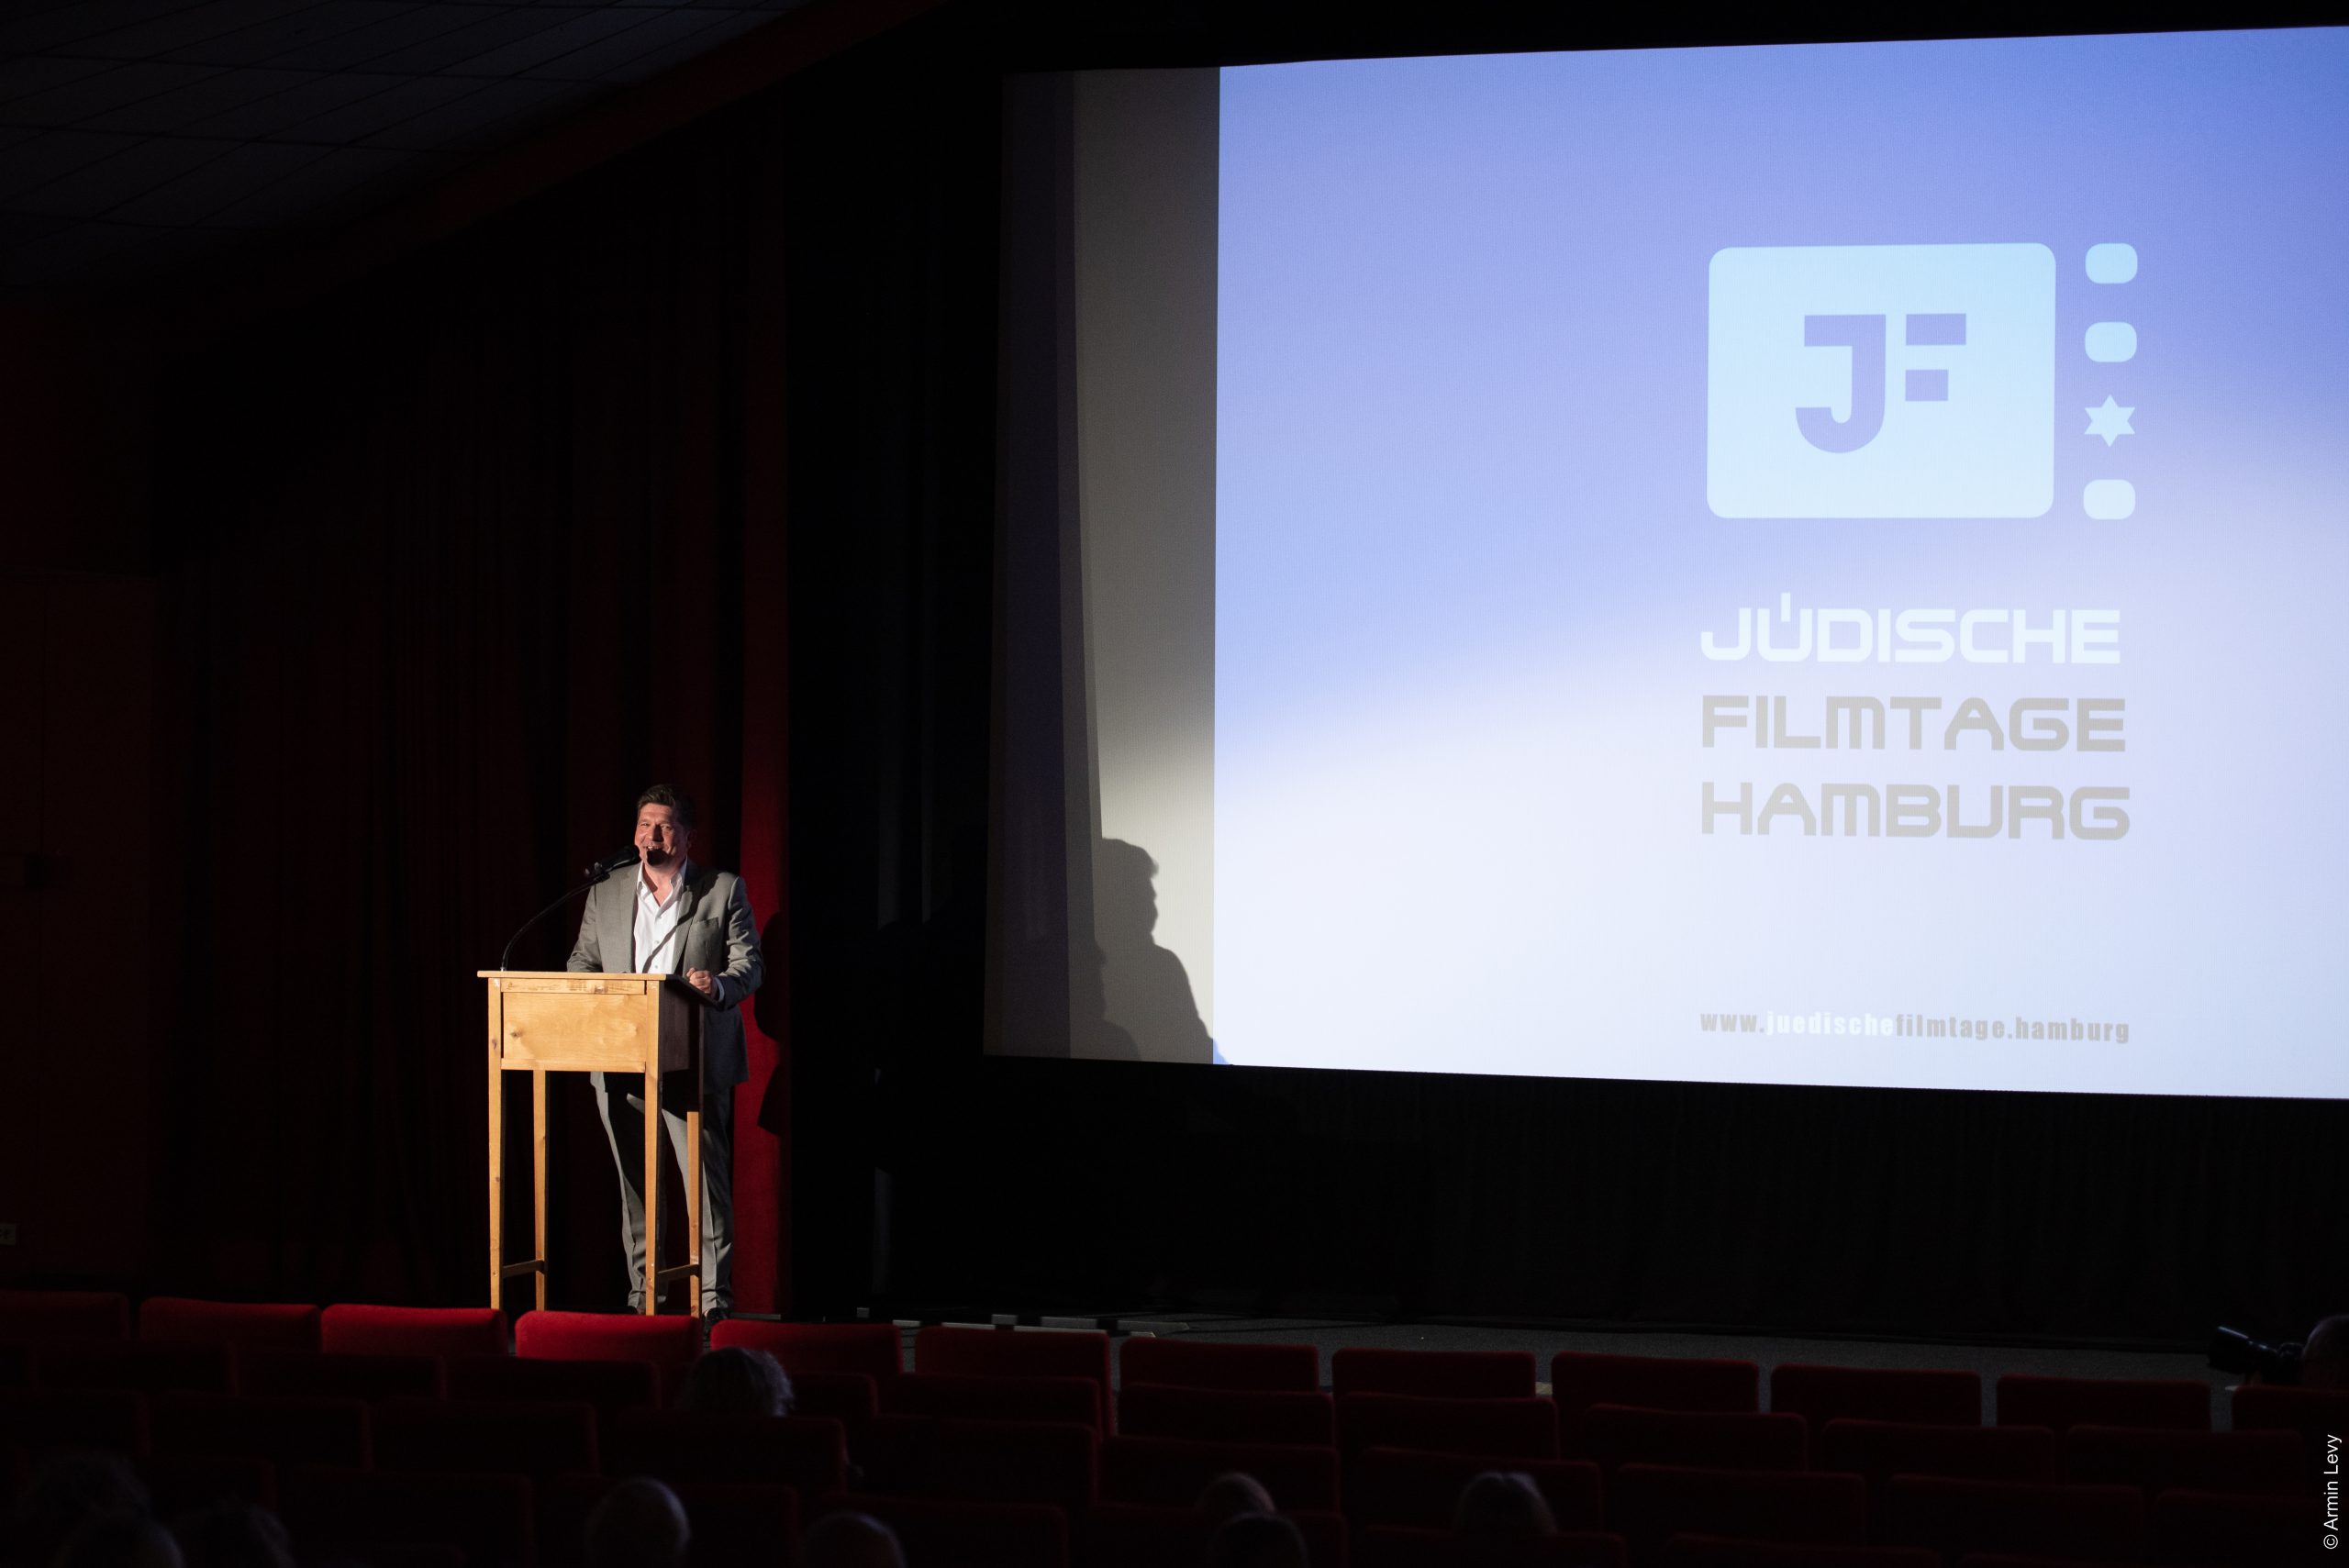 Eröffnung der zweiten jüdischen Filmtage Hamburg 